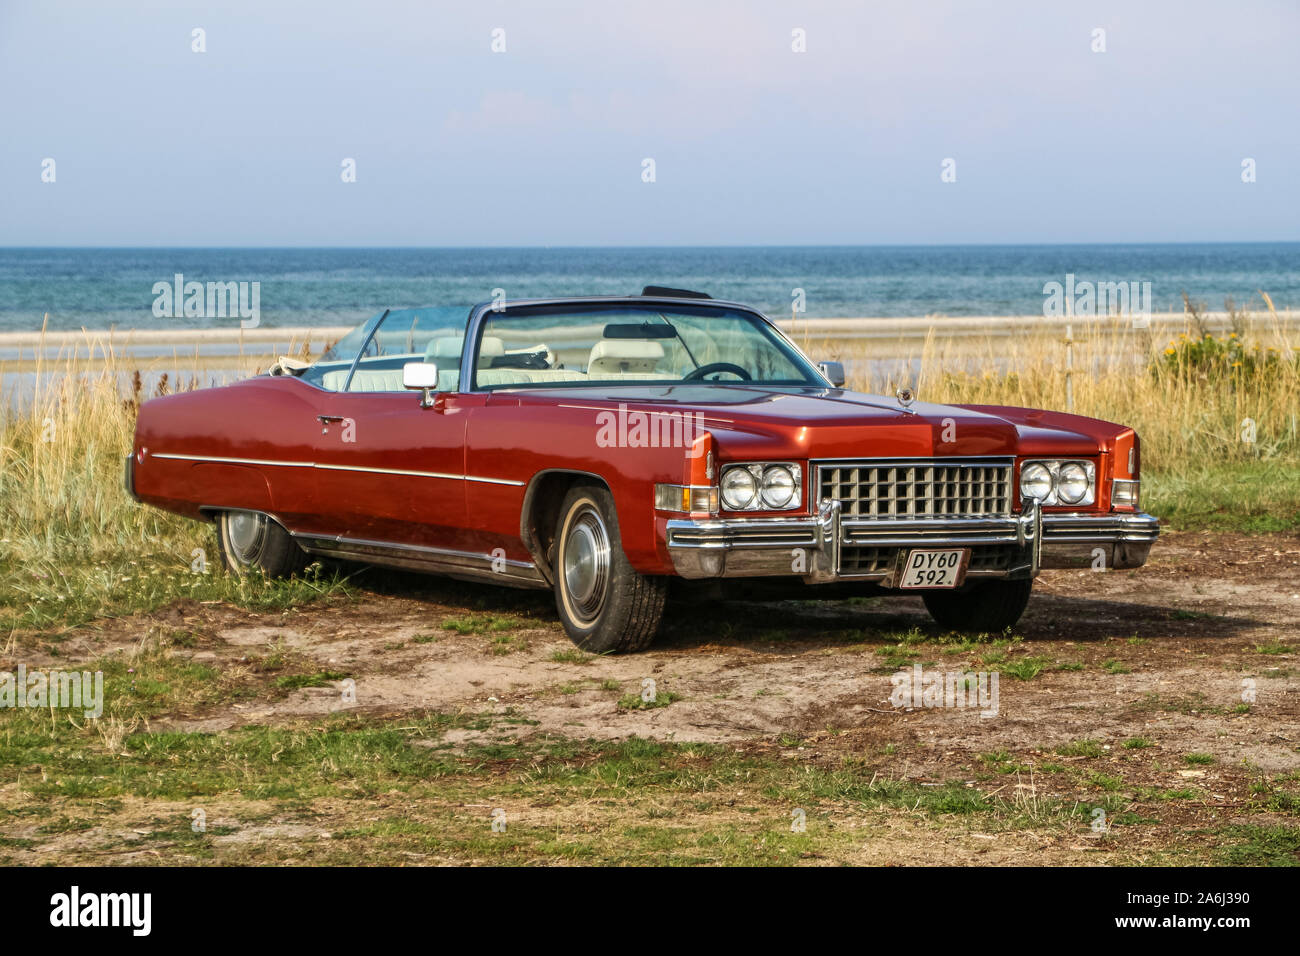 Red Cadillac Eldorado ist während der jeden Montag retro Autos Besitzer treffen auf dem öffentlichen Strand von Hevringholm gesehen, Dänemark am 29. Juli 2019 © Michal Fludra/Alamy leben Nachrichten Stockfoto